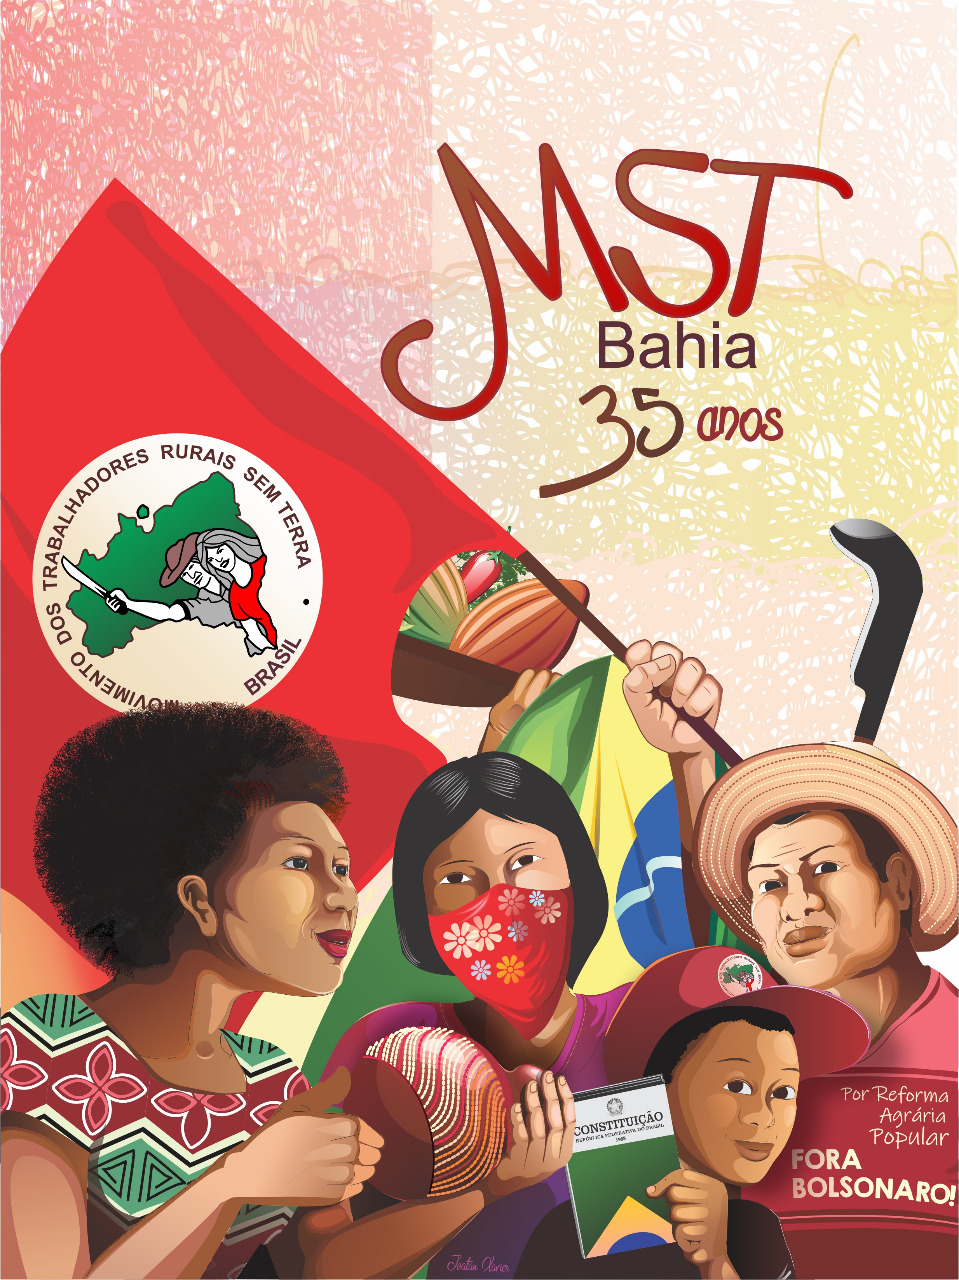 MST na Bahia comemora 35 anos de luta e resistência